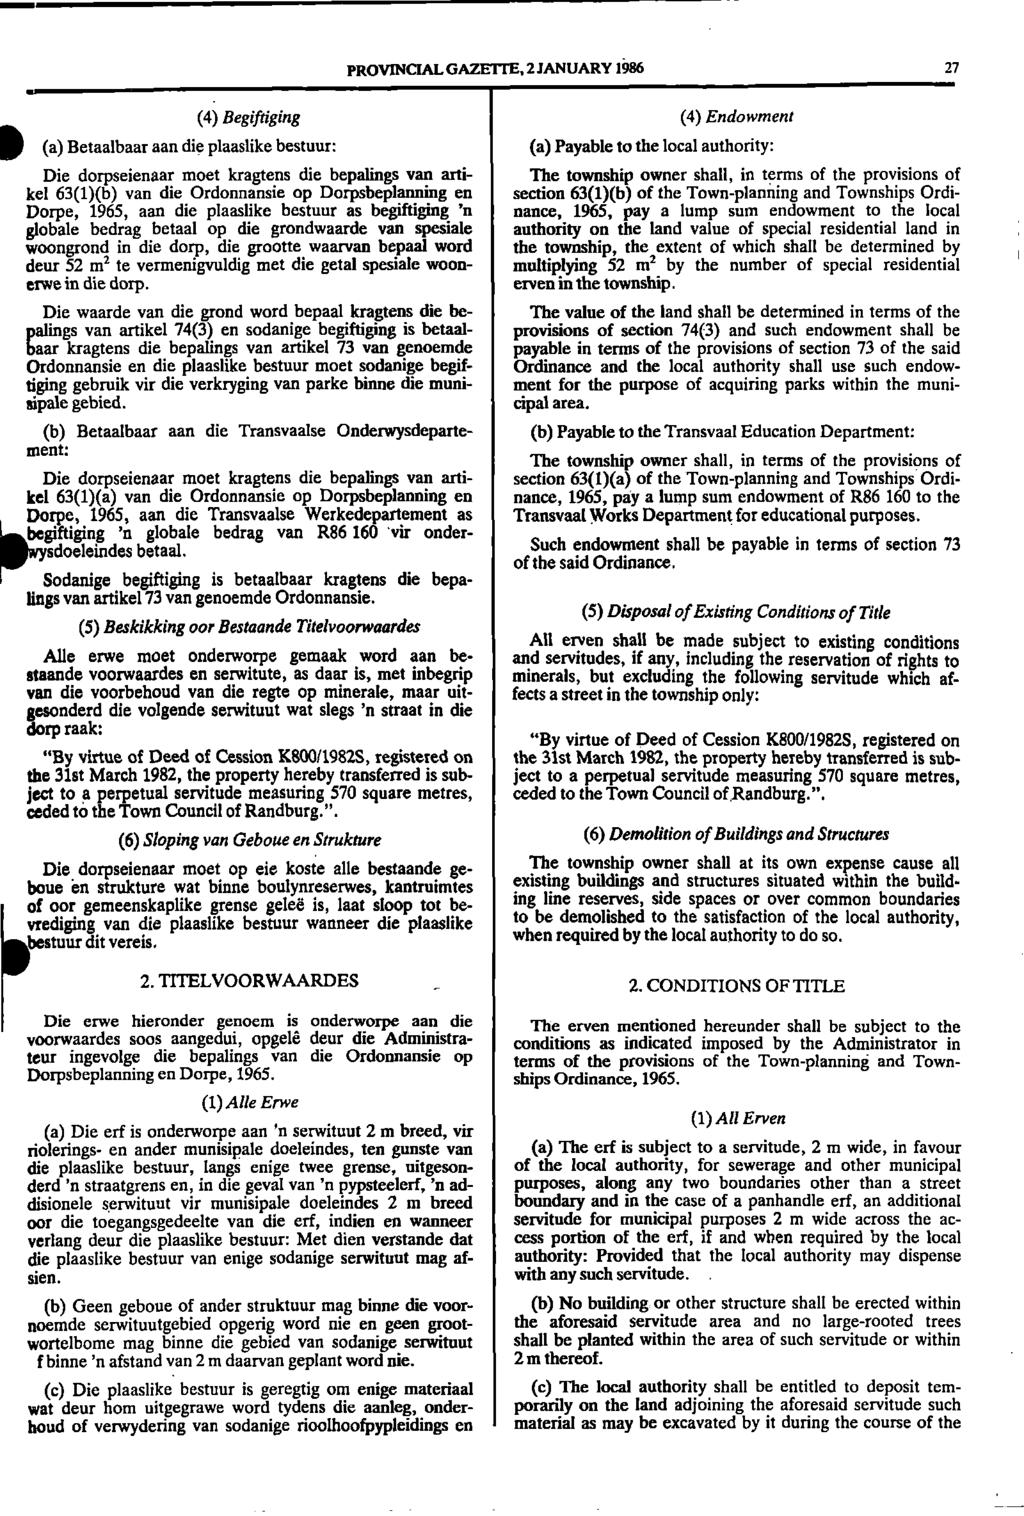 1 PROVINCIAL GAZETTE, 2 JANUARY 1986 27 (4) Begiftiging (4) Endowment IIII(a) Betaalbaar aan die plaaslike bestuur: (a) Payable to the local authority: Die dorpseienaar moet kragtens die bepalings